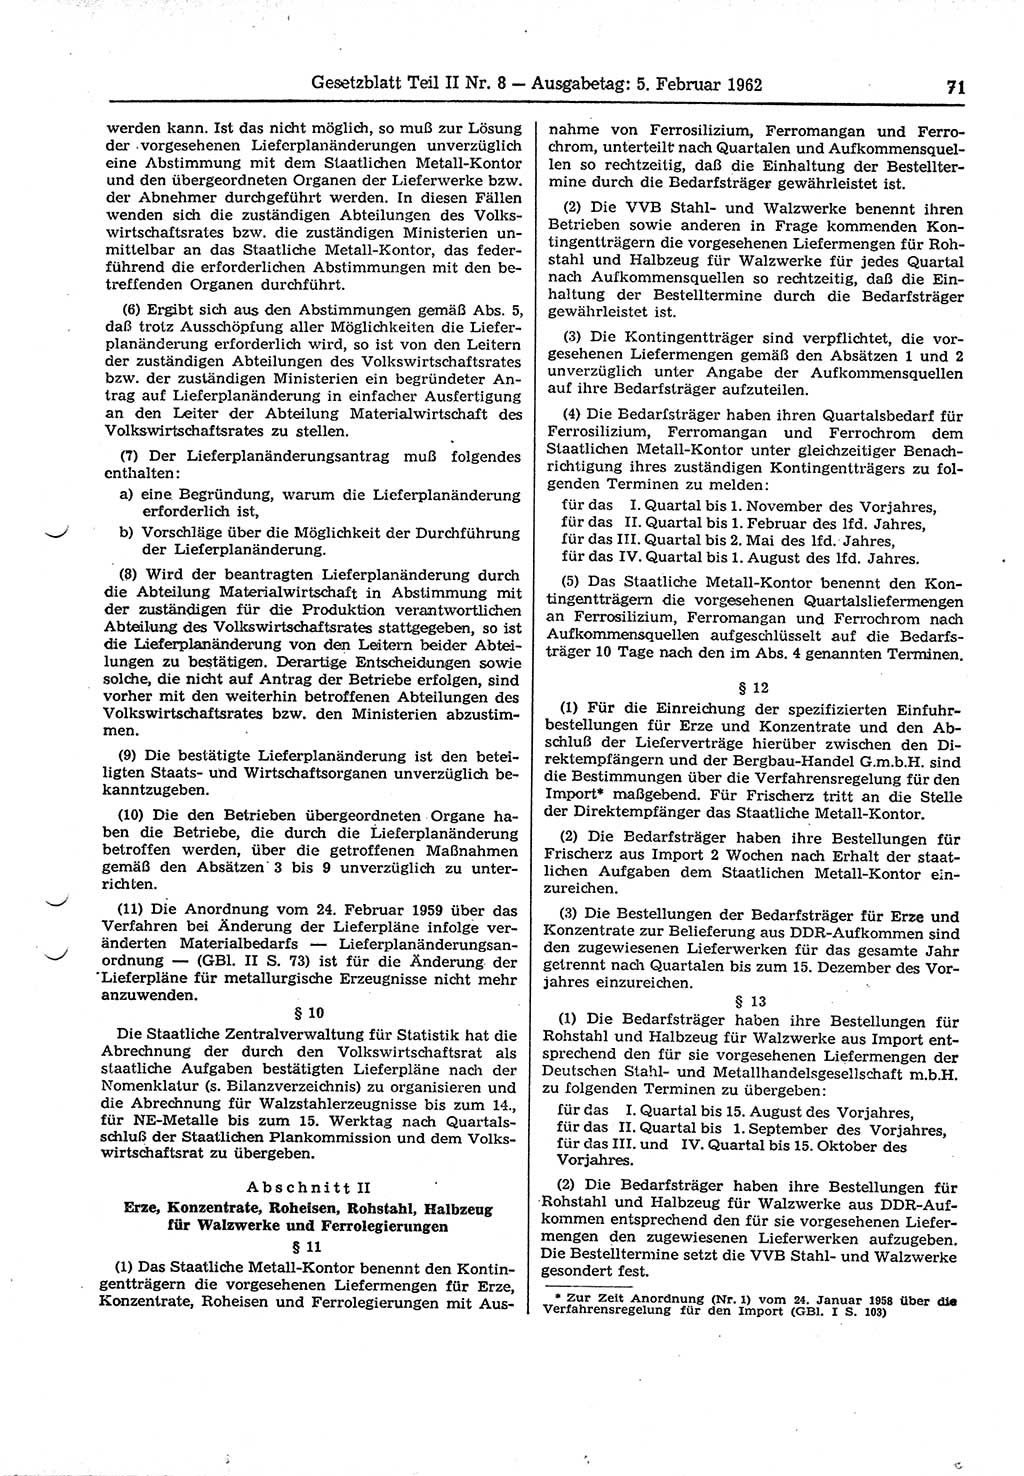 Gesetzblatt (GBl.) der Deutschen Demokratischen Republik (DDR) Teil ⅠⅠ 1962, Seite 71 (GBl. DDR ⅠⅠ 1962, S. 71)